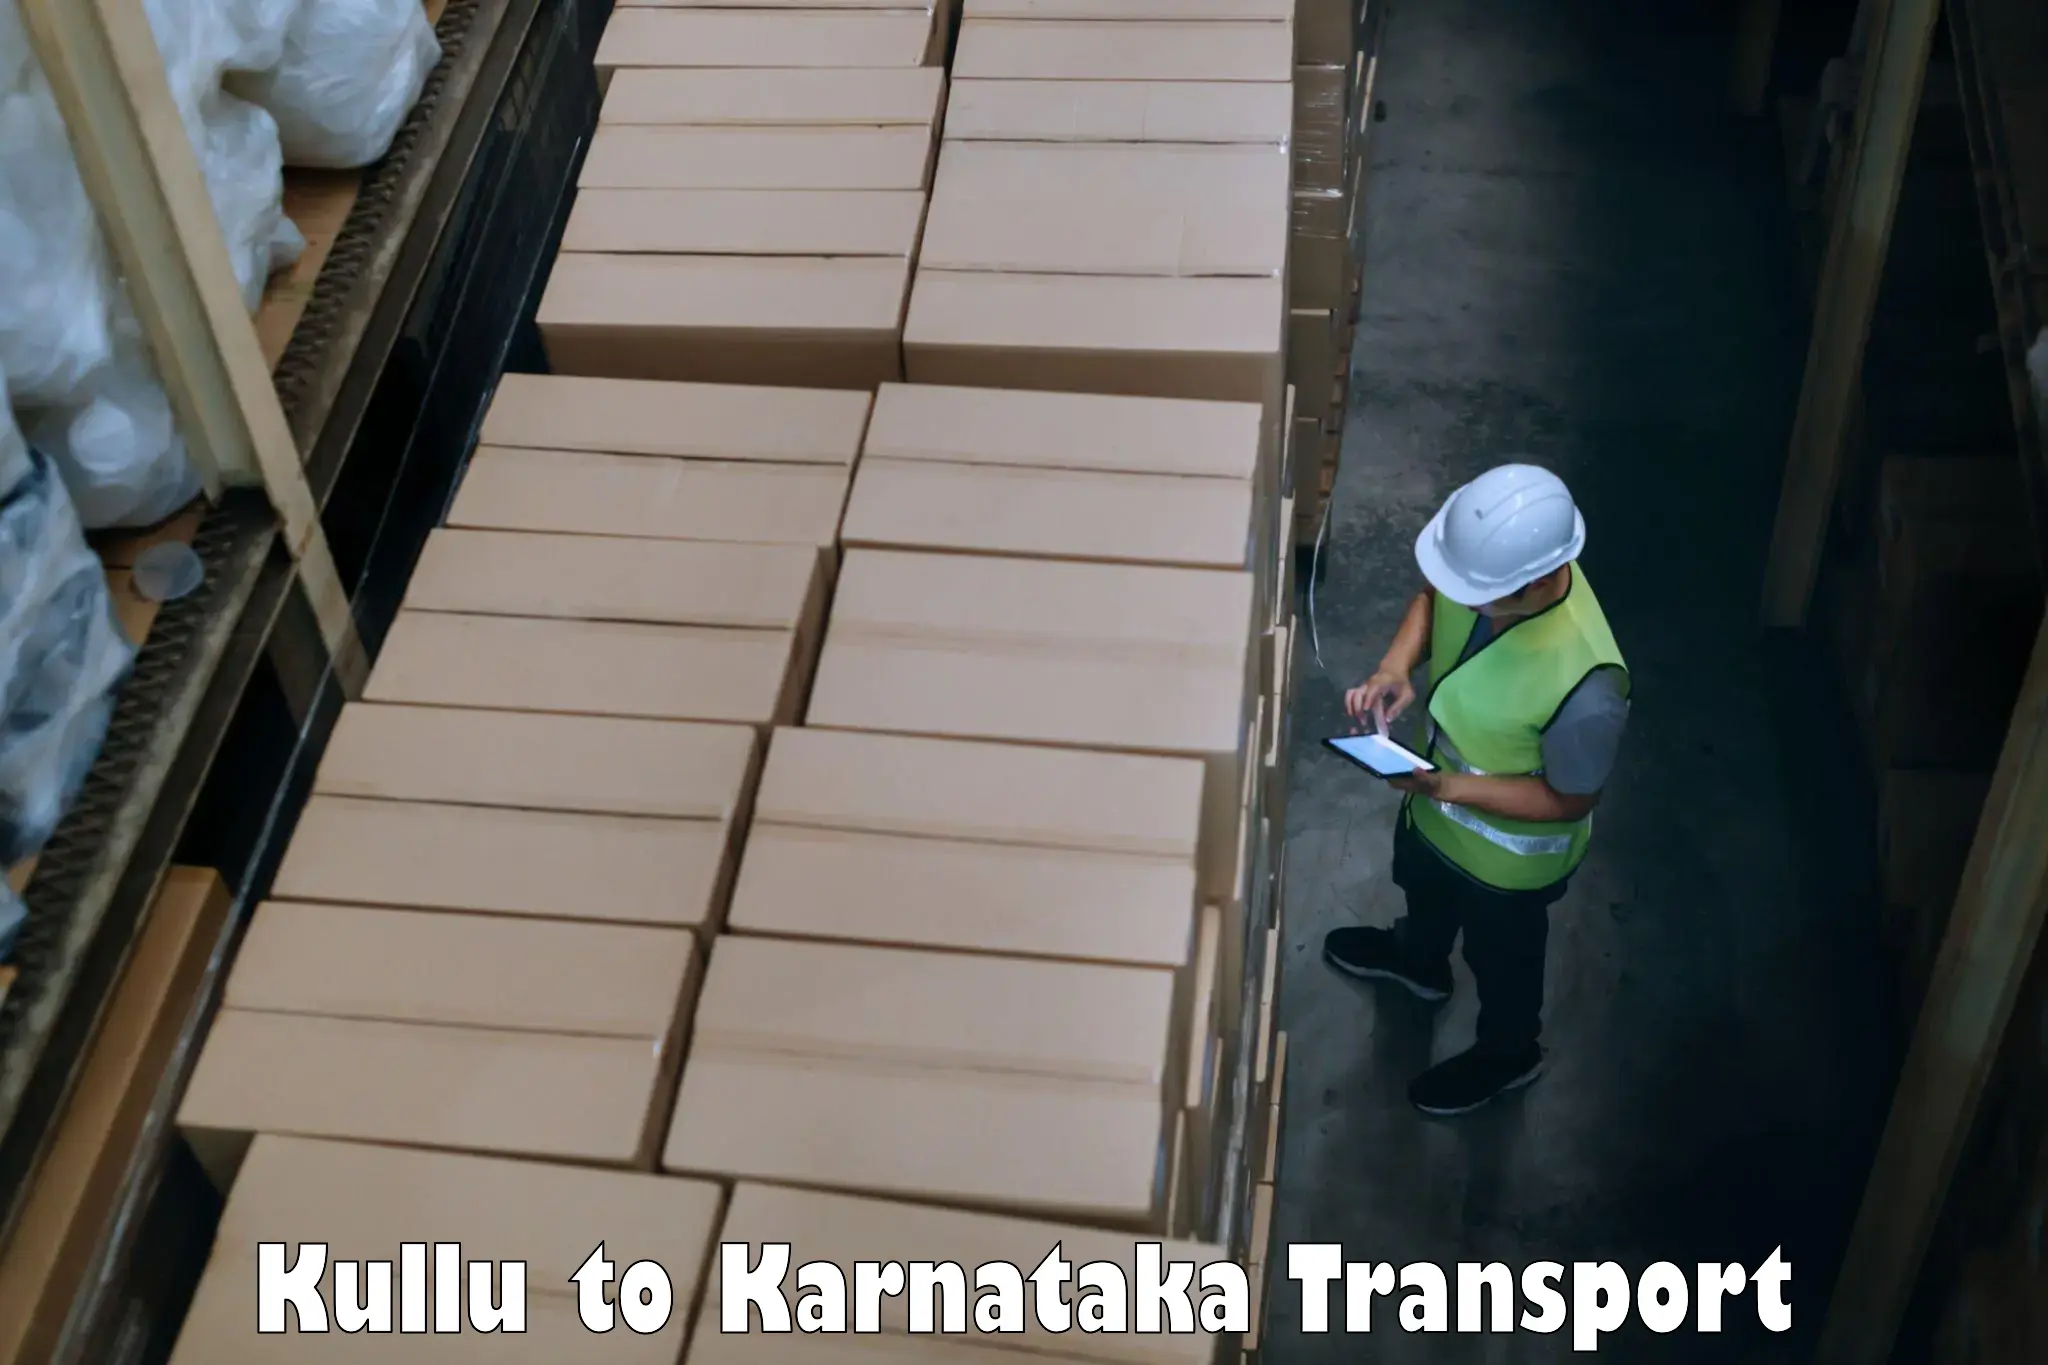 Transportation services Kullu to Basavakalyan